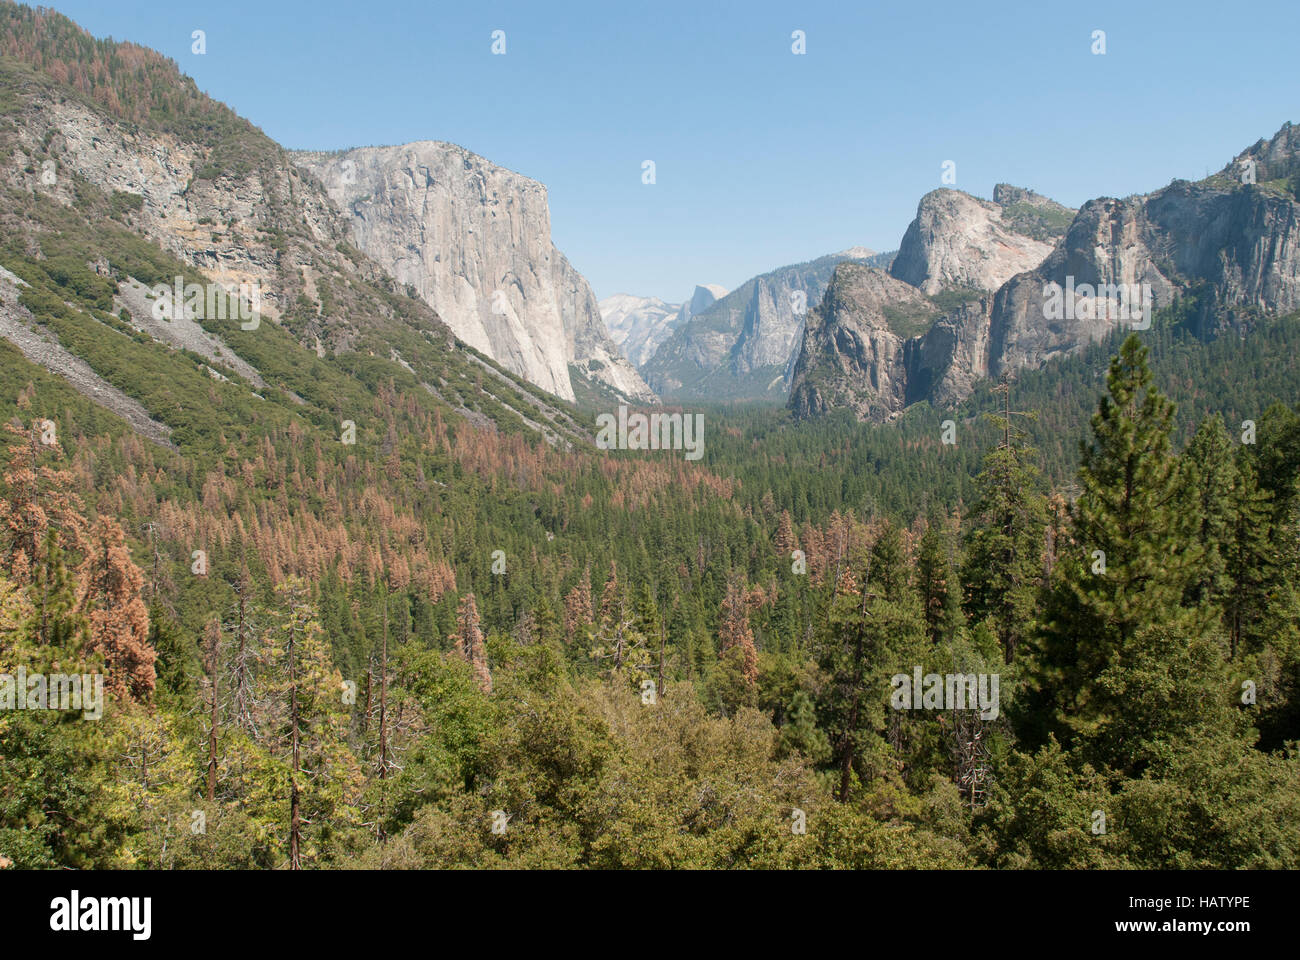 Ein Blick ins Yosemite Tal zeigt Pinien gebräunt durch Dürre und Borkenkäfer Schäden. Stockfoto